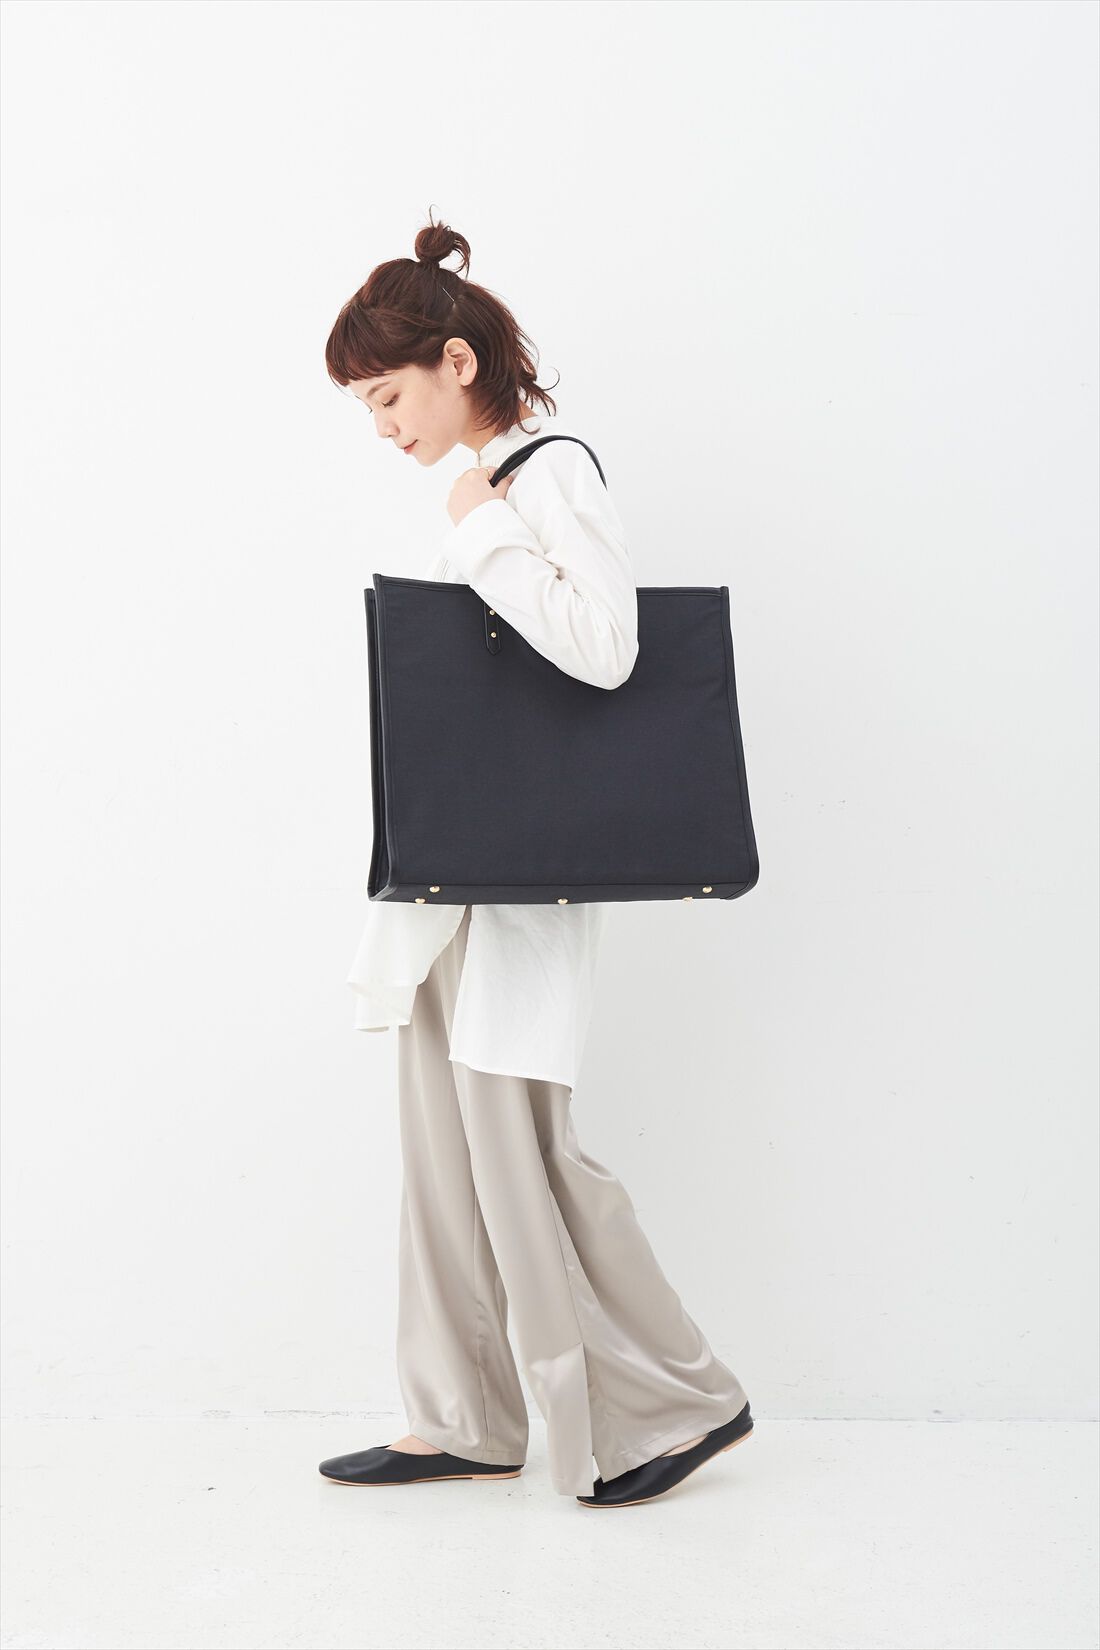 OSYAIRO|OSYAIRO ジャンボうちわが入るパイピングトートバッグ〈ブラック〉|持った時のサイズ感はこれくらい。肩かけもOK。